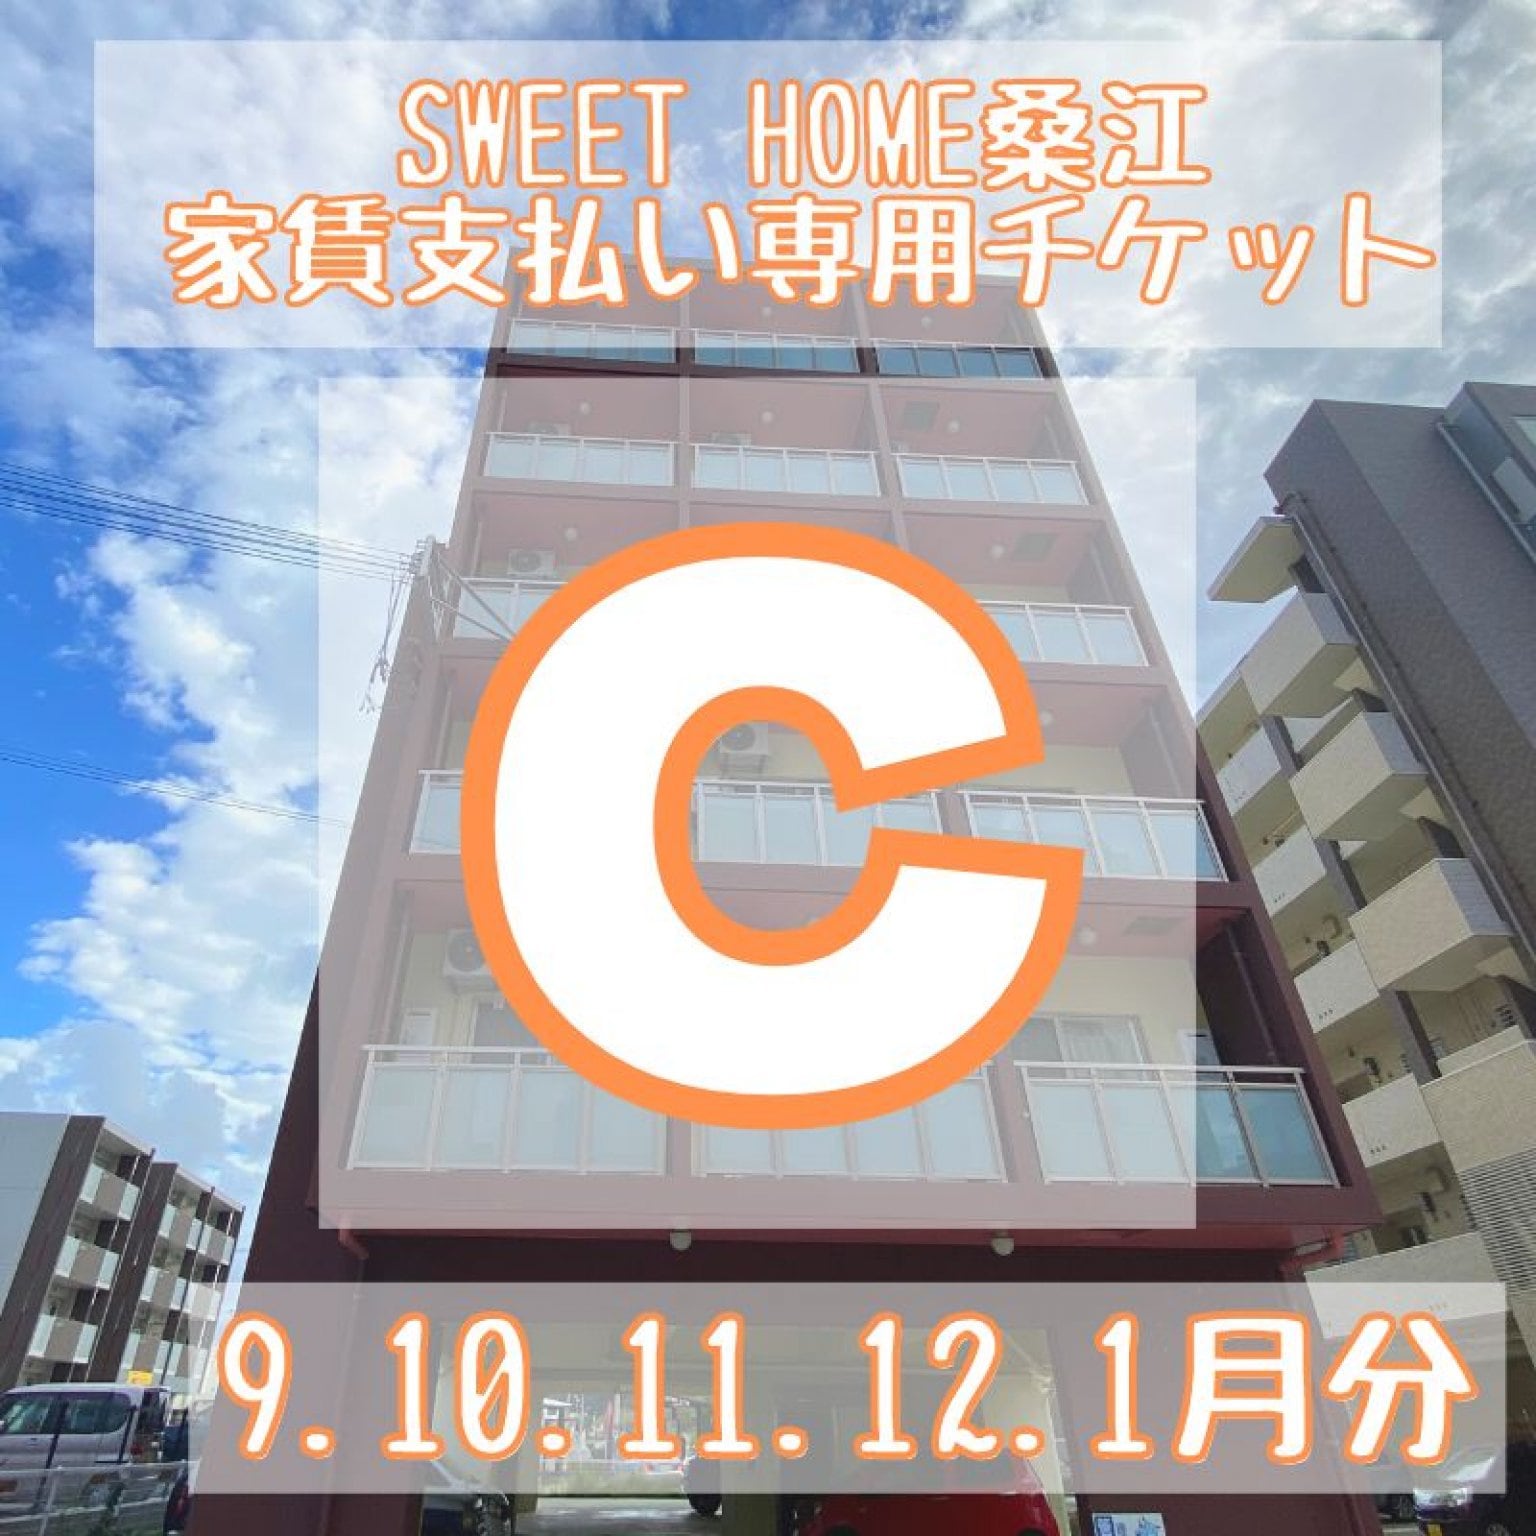 Sweet home 桑江 　9.10.11.12.1月分家賃支払い専用チケットC